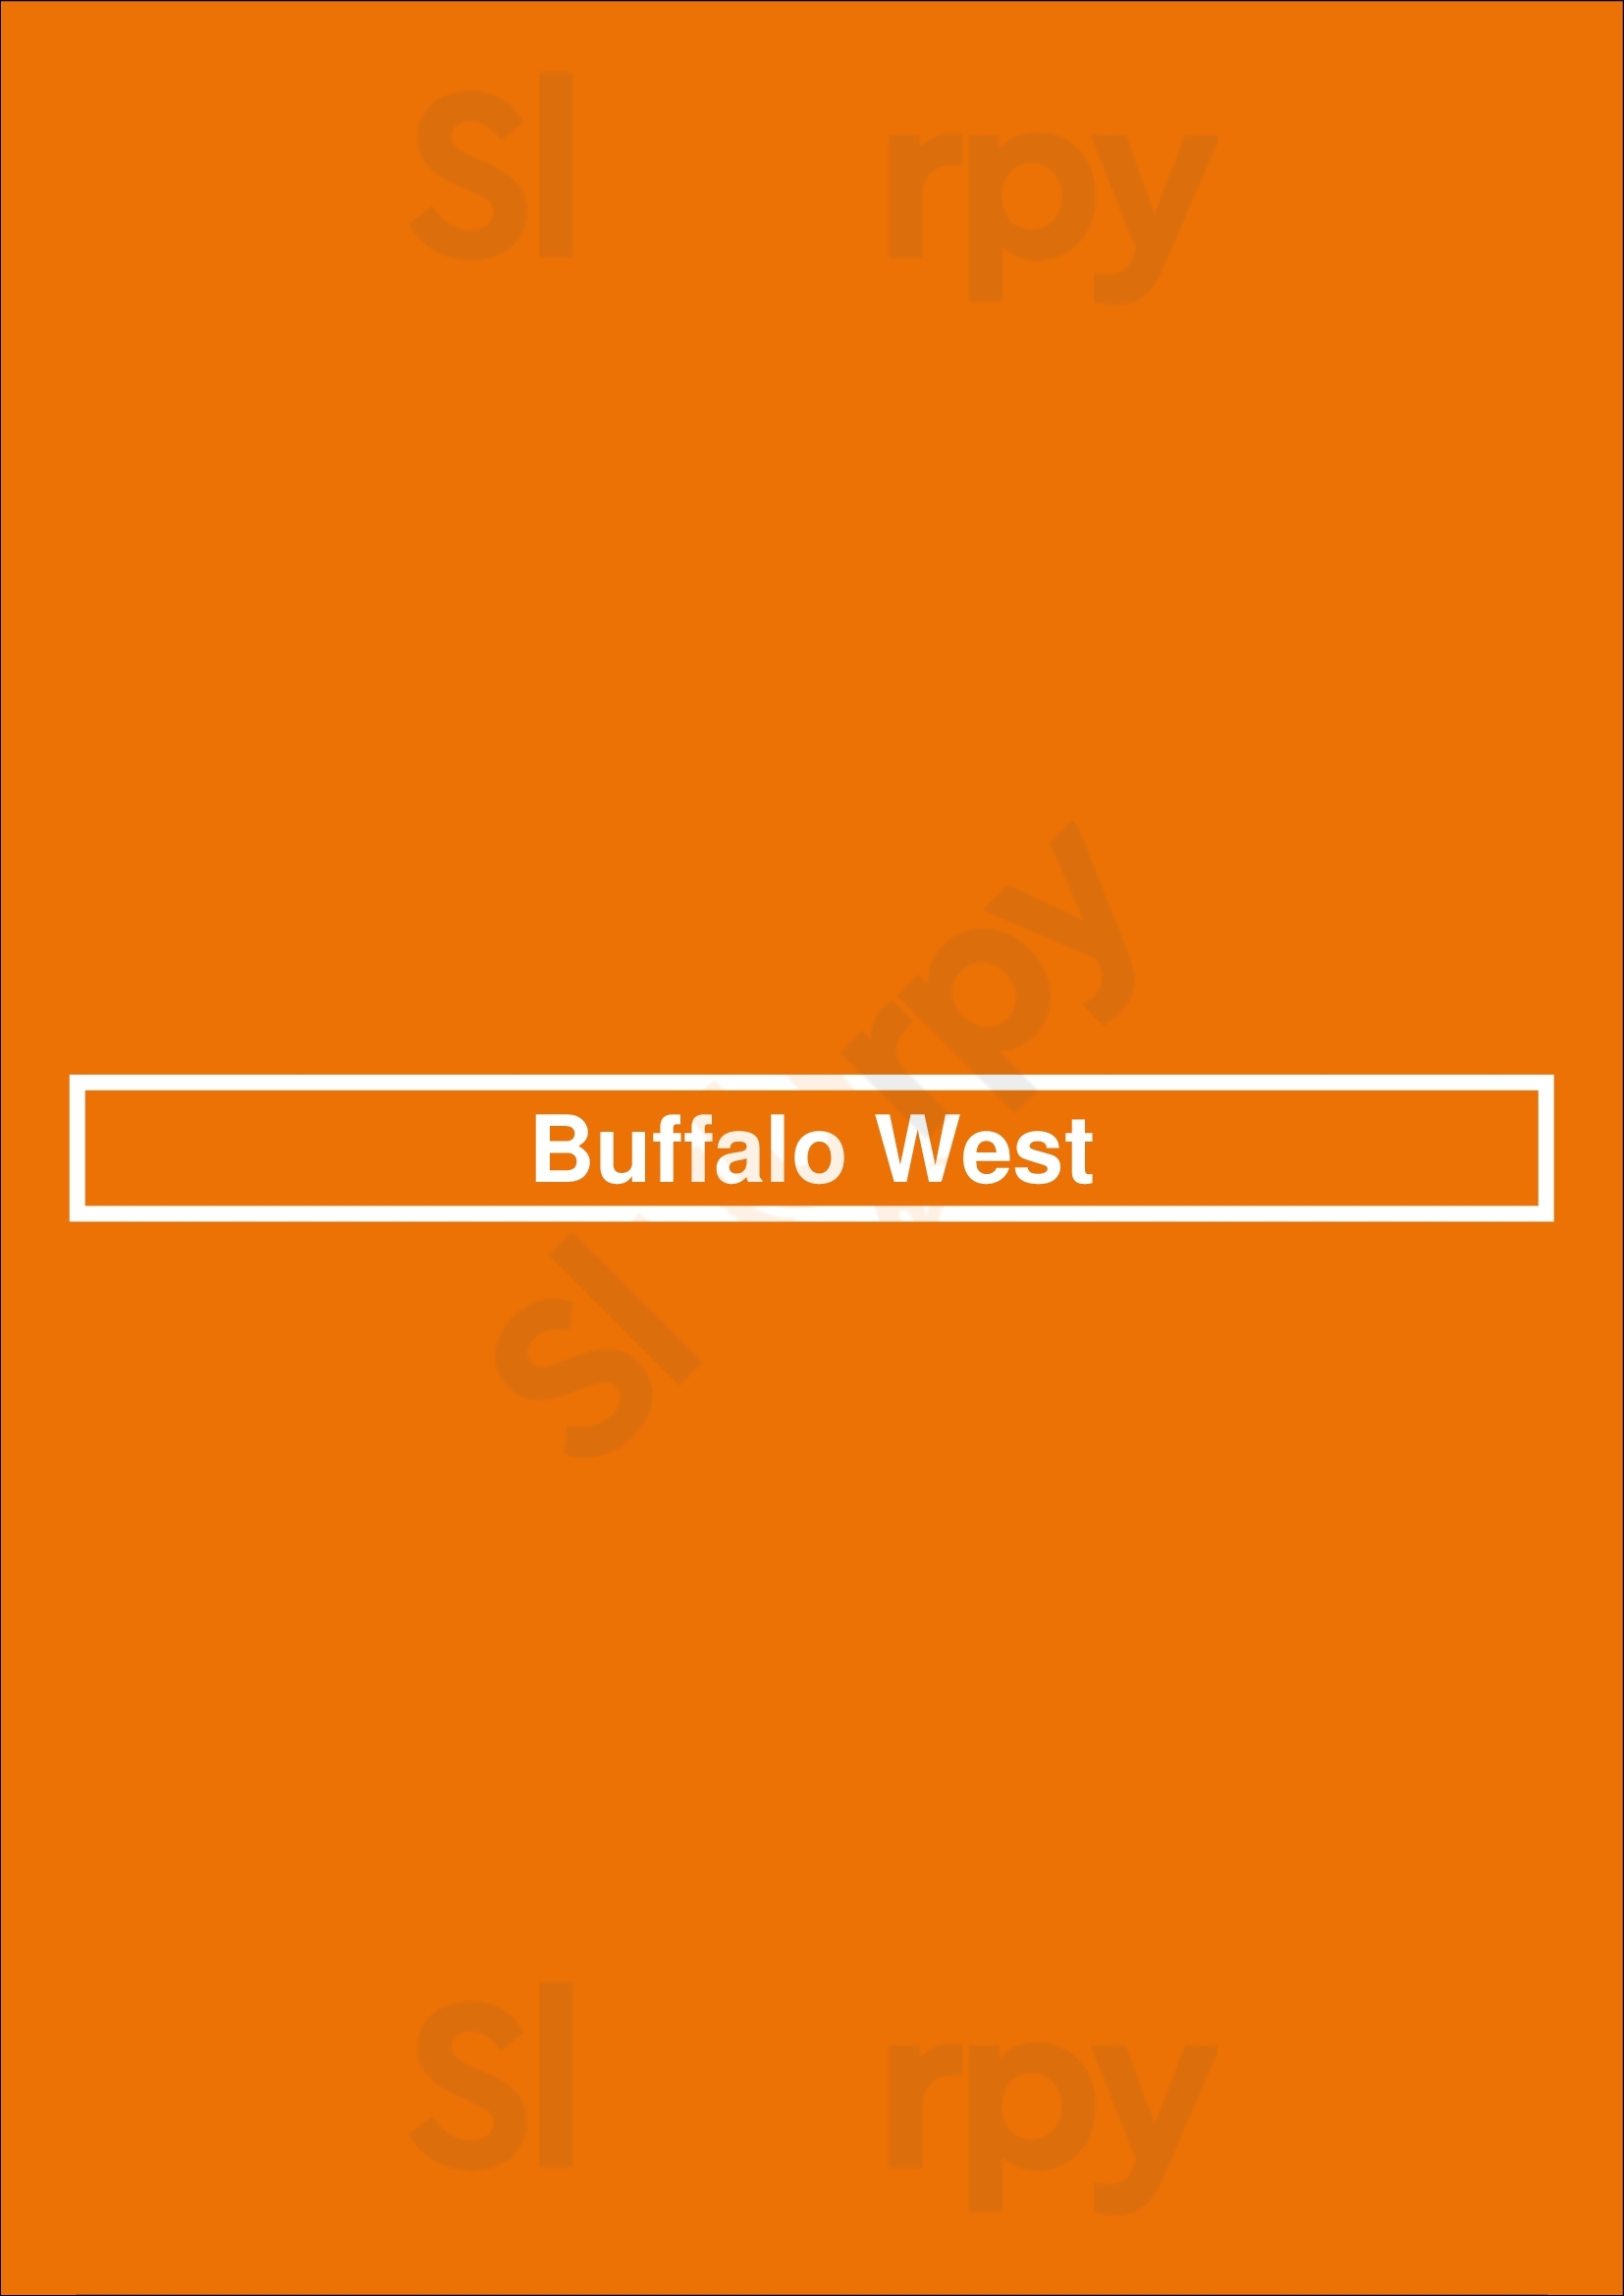 Buffalo West Fort Worth Menu - 1